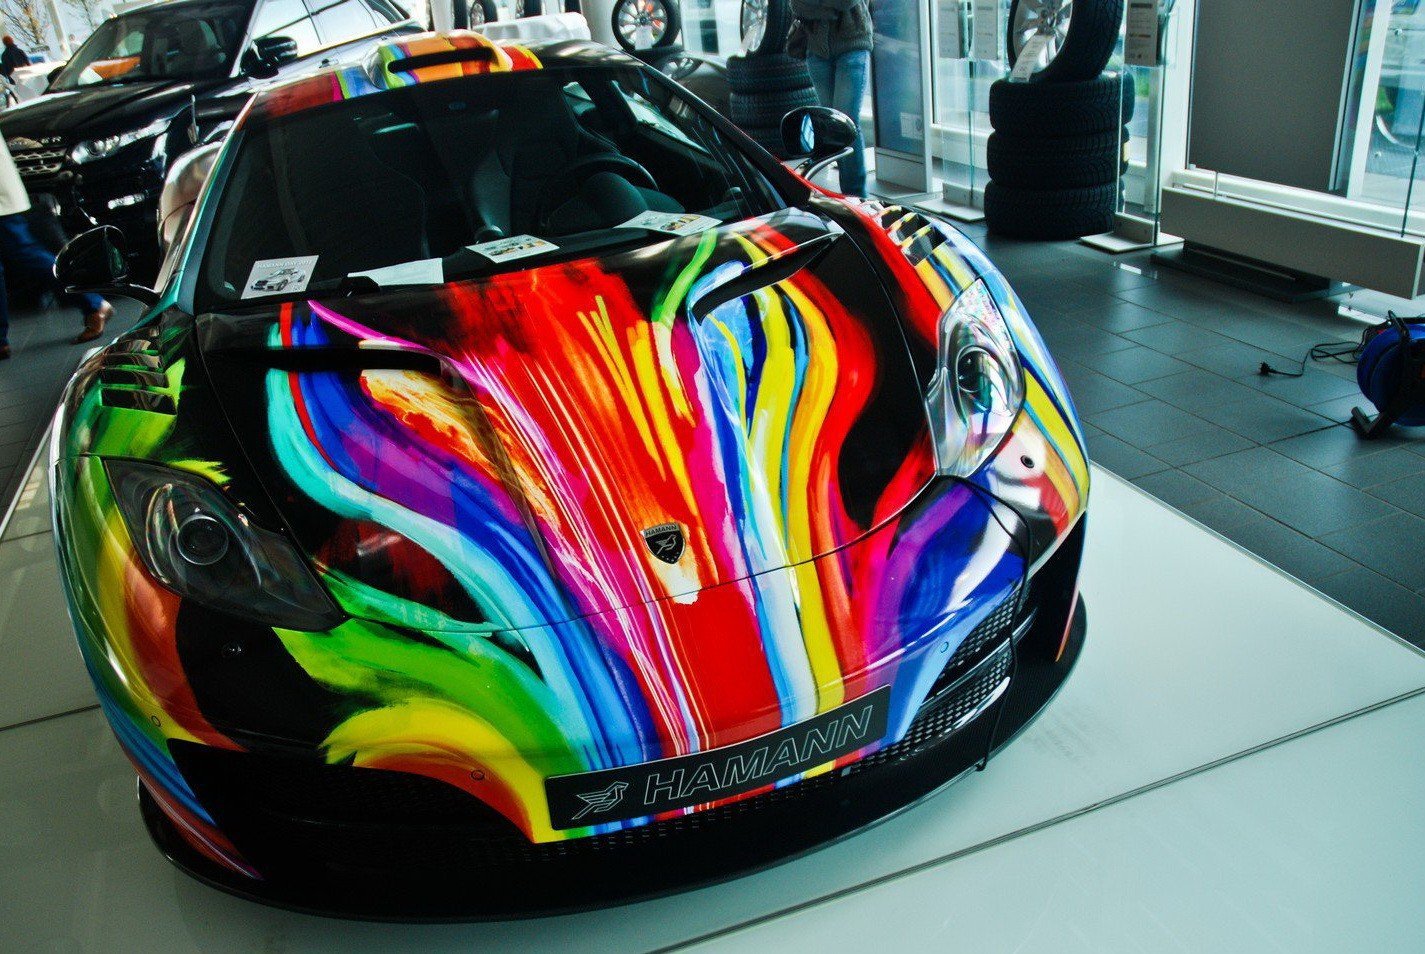 Как называется разрисованные. Цветные машины. Разноцветные автомобили. Разрисованные авто. Необычная покраска машины.